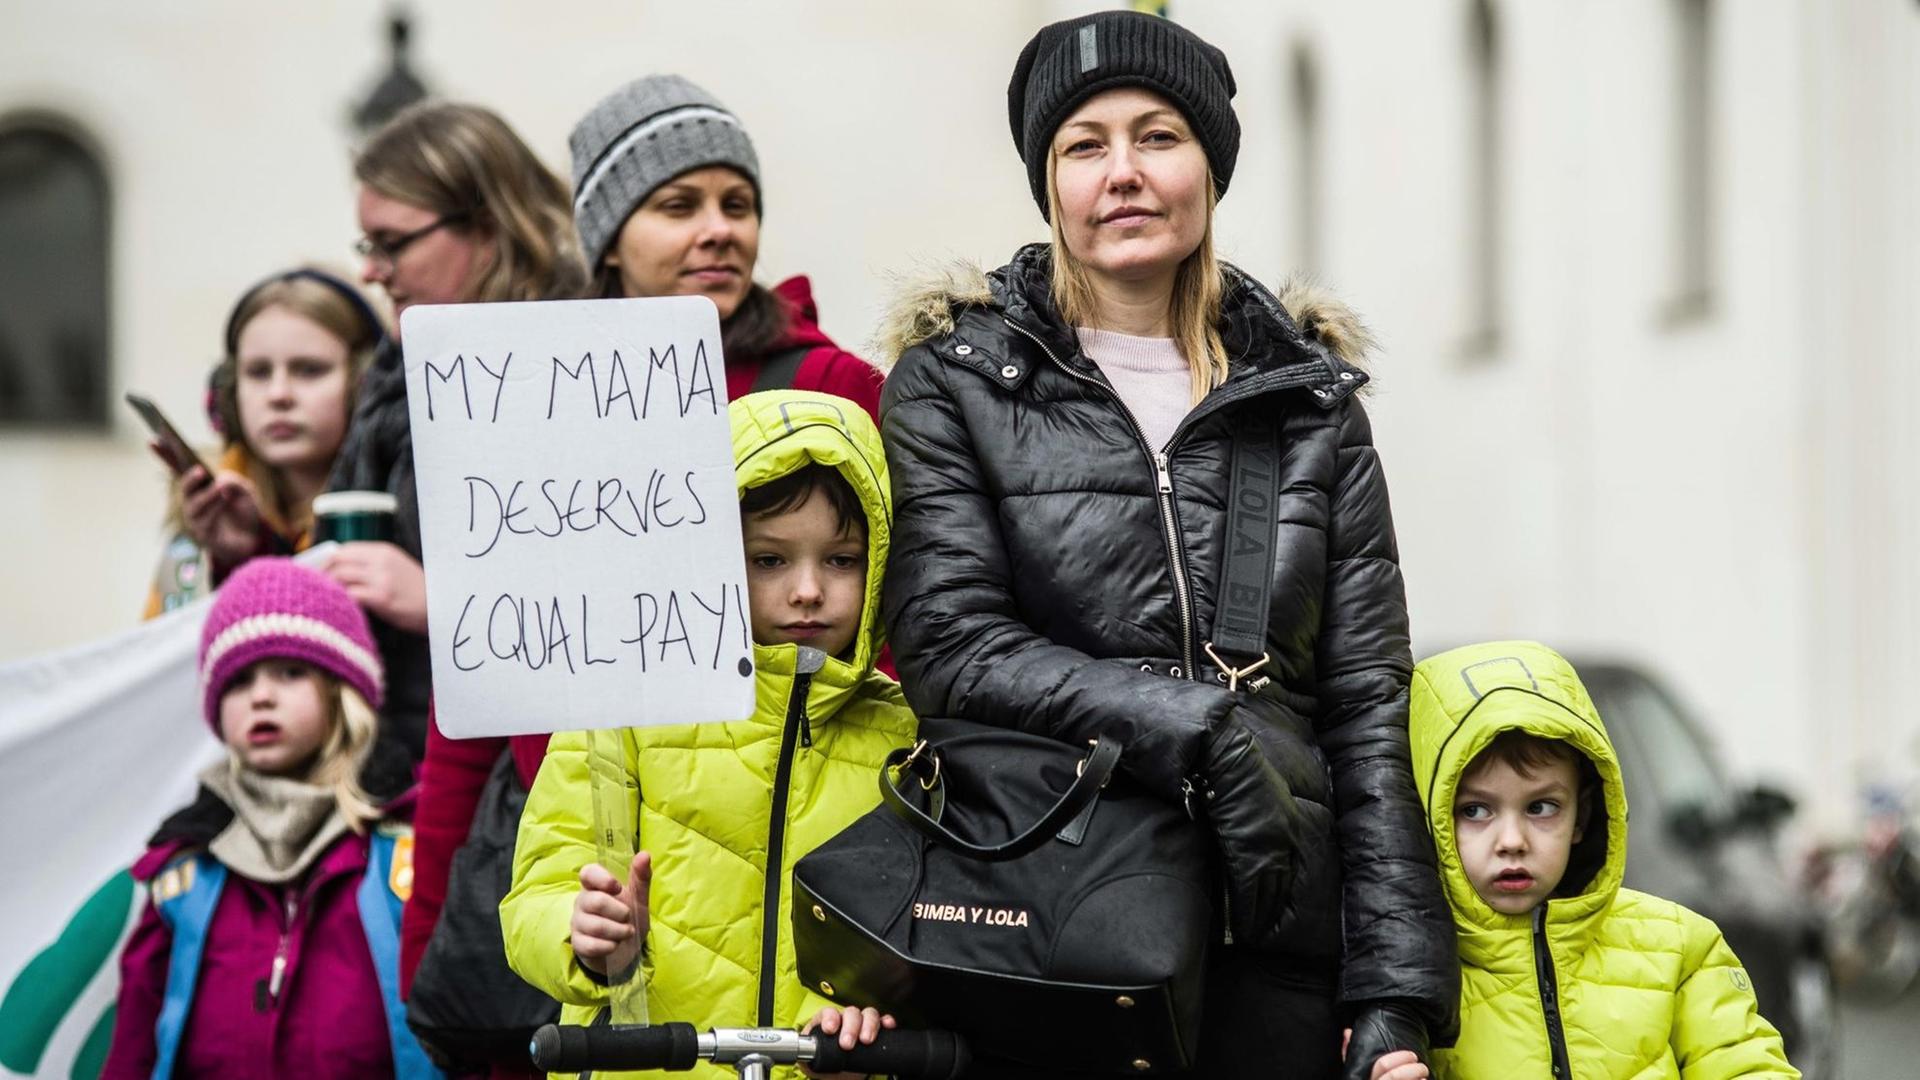 Frauen und Kinder demonstrieren in München für eine bessere Bezahlung von Frauen. Sie halten ein Schild mit der Aufschrift "My Mama deserves equal pay" hoch.